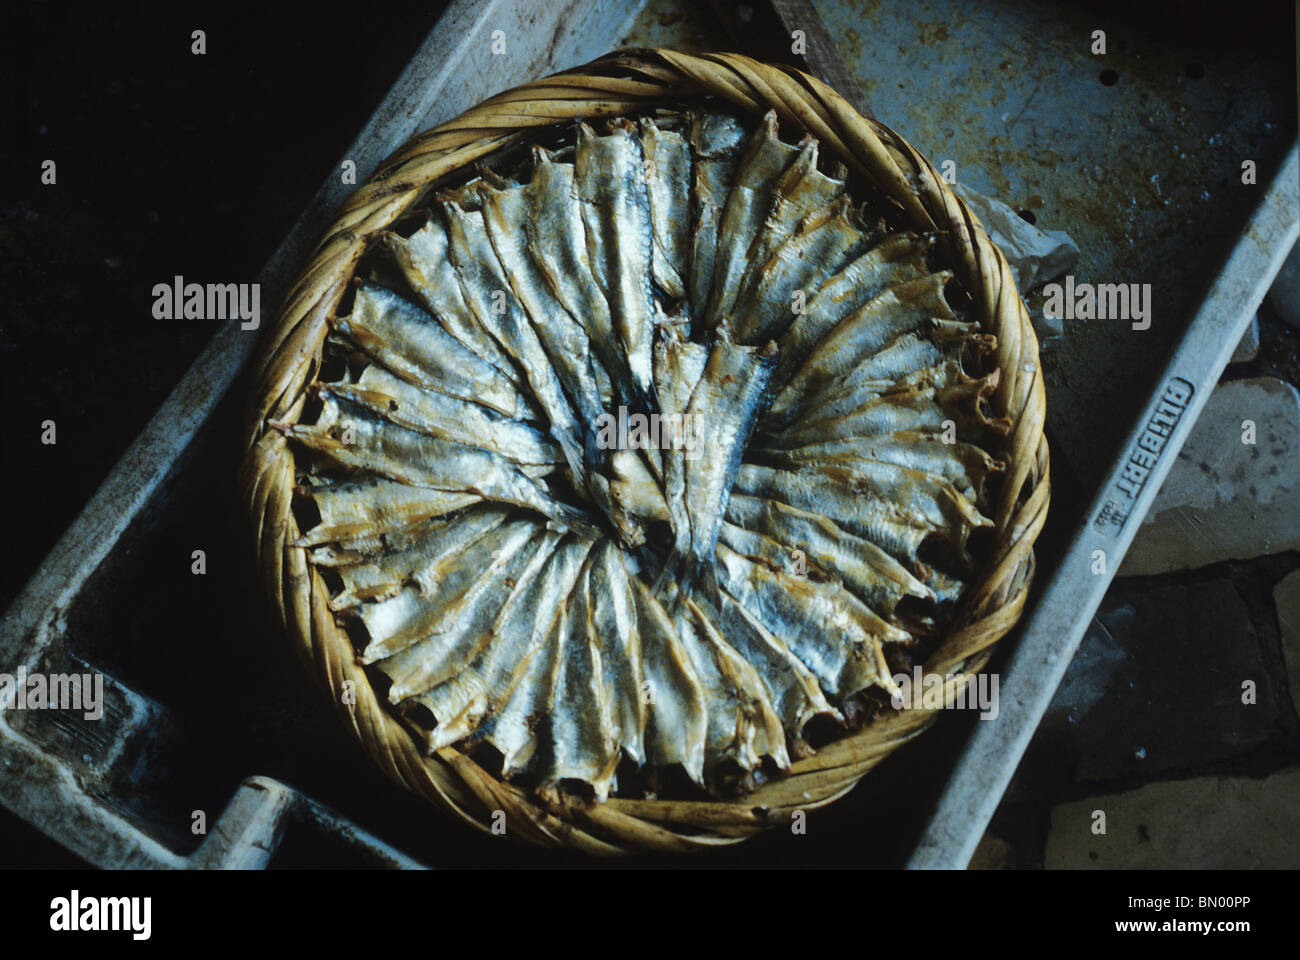 En un mercado de Algarve sardinas secas son artísticamente dispuestas en círculo en una canasta redonda Foto de stock